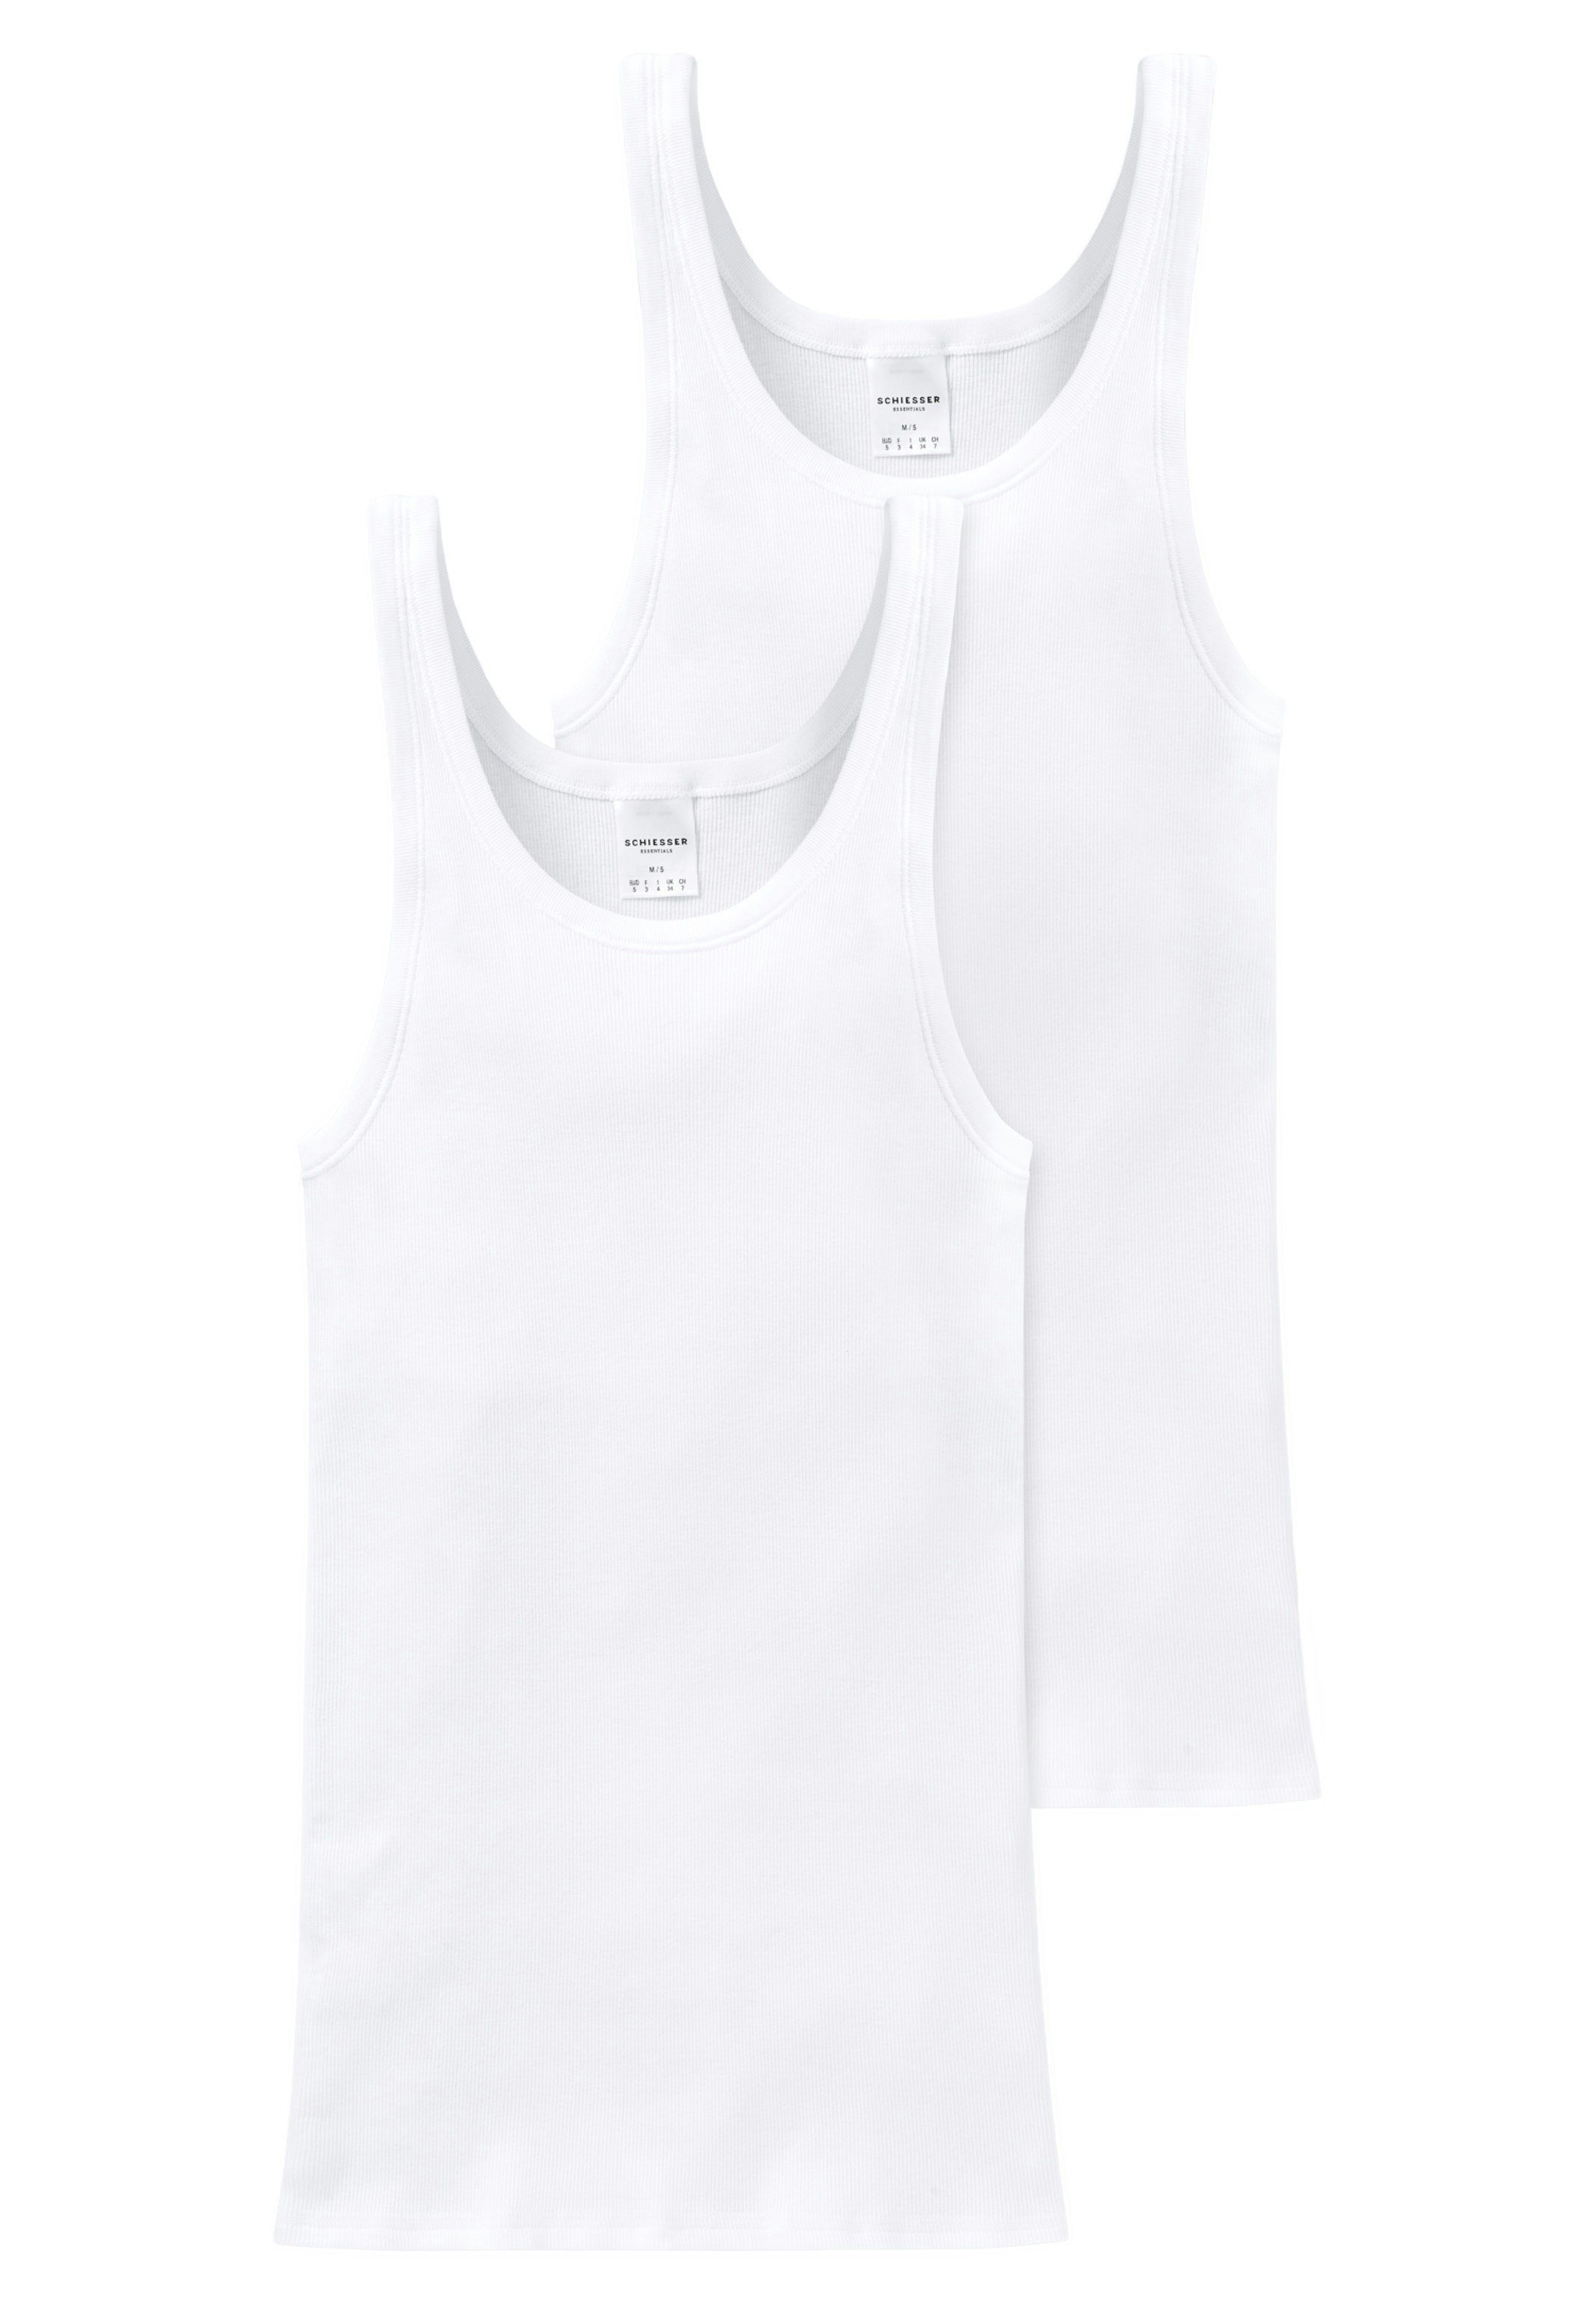 Doppelripp Strapazierfähig Unterhemd - Cotton Baumwolle 2-St) Pack Essentials Unterhemd Schiesser - (Spar-Set, 2er